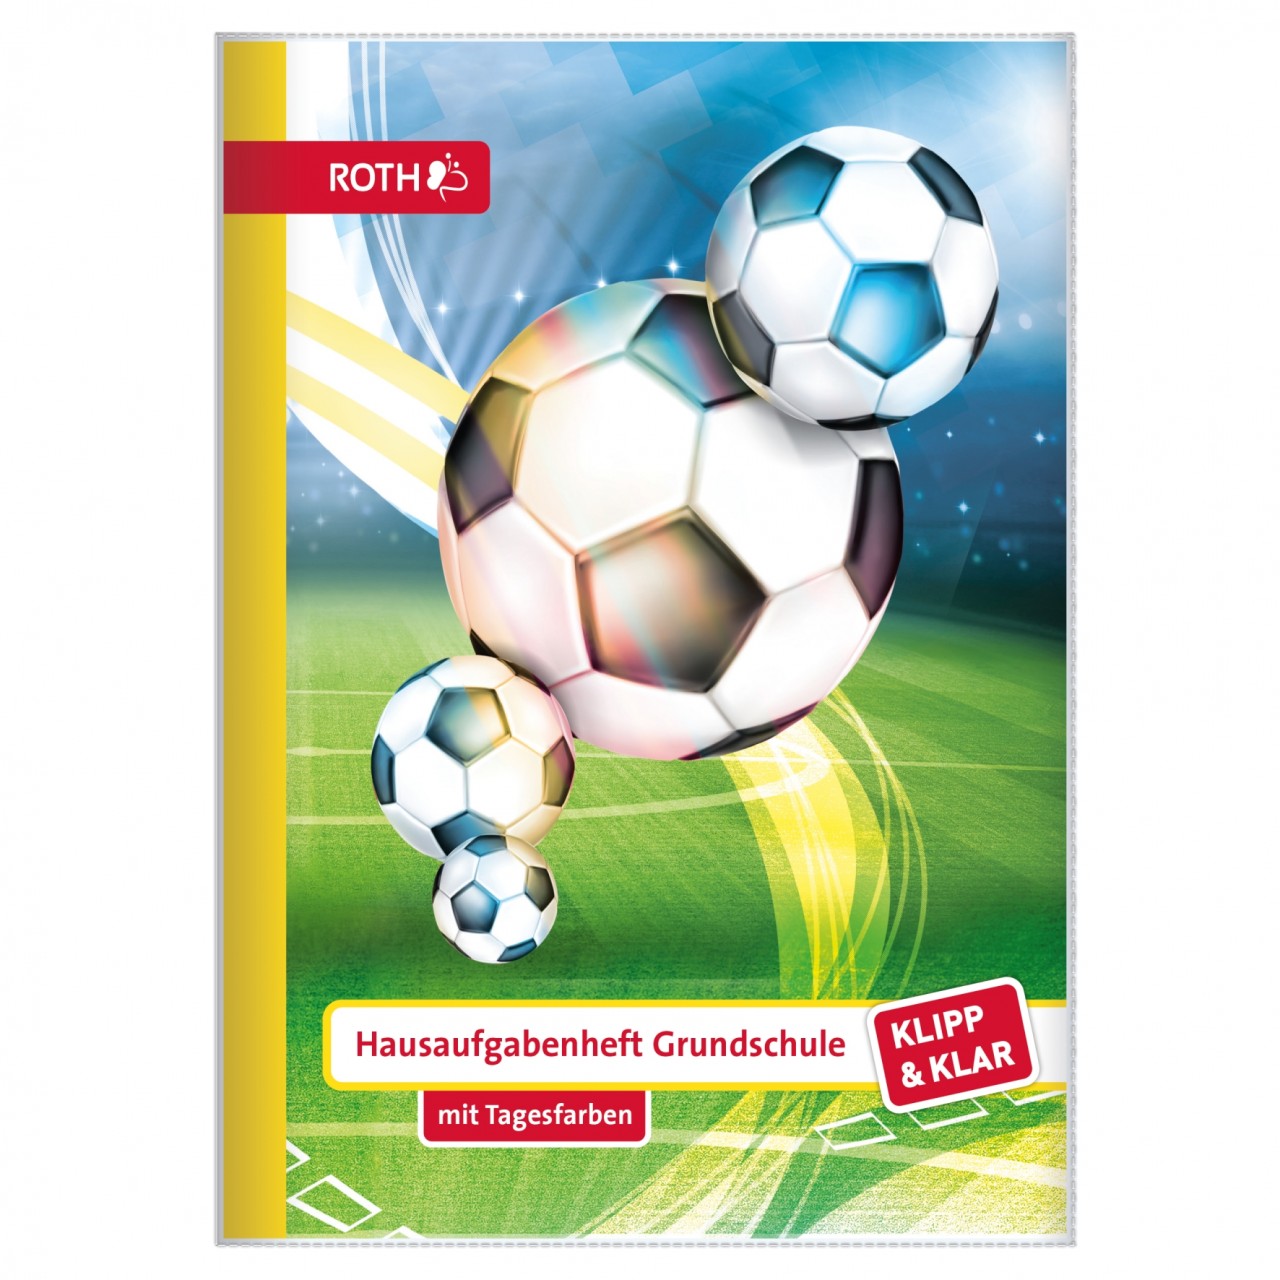 Klipp&Klar Hausaufgabenheft Grundschule Fußball von Roth GmbH